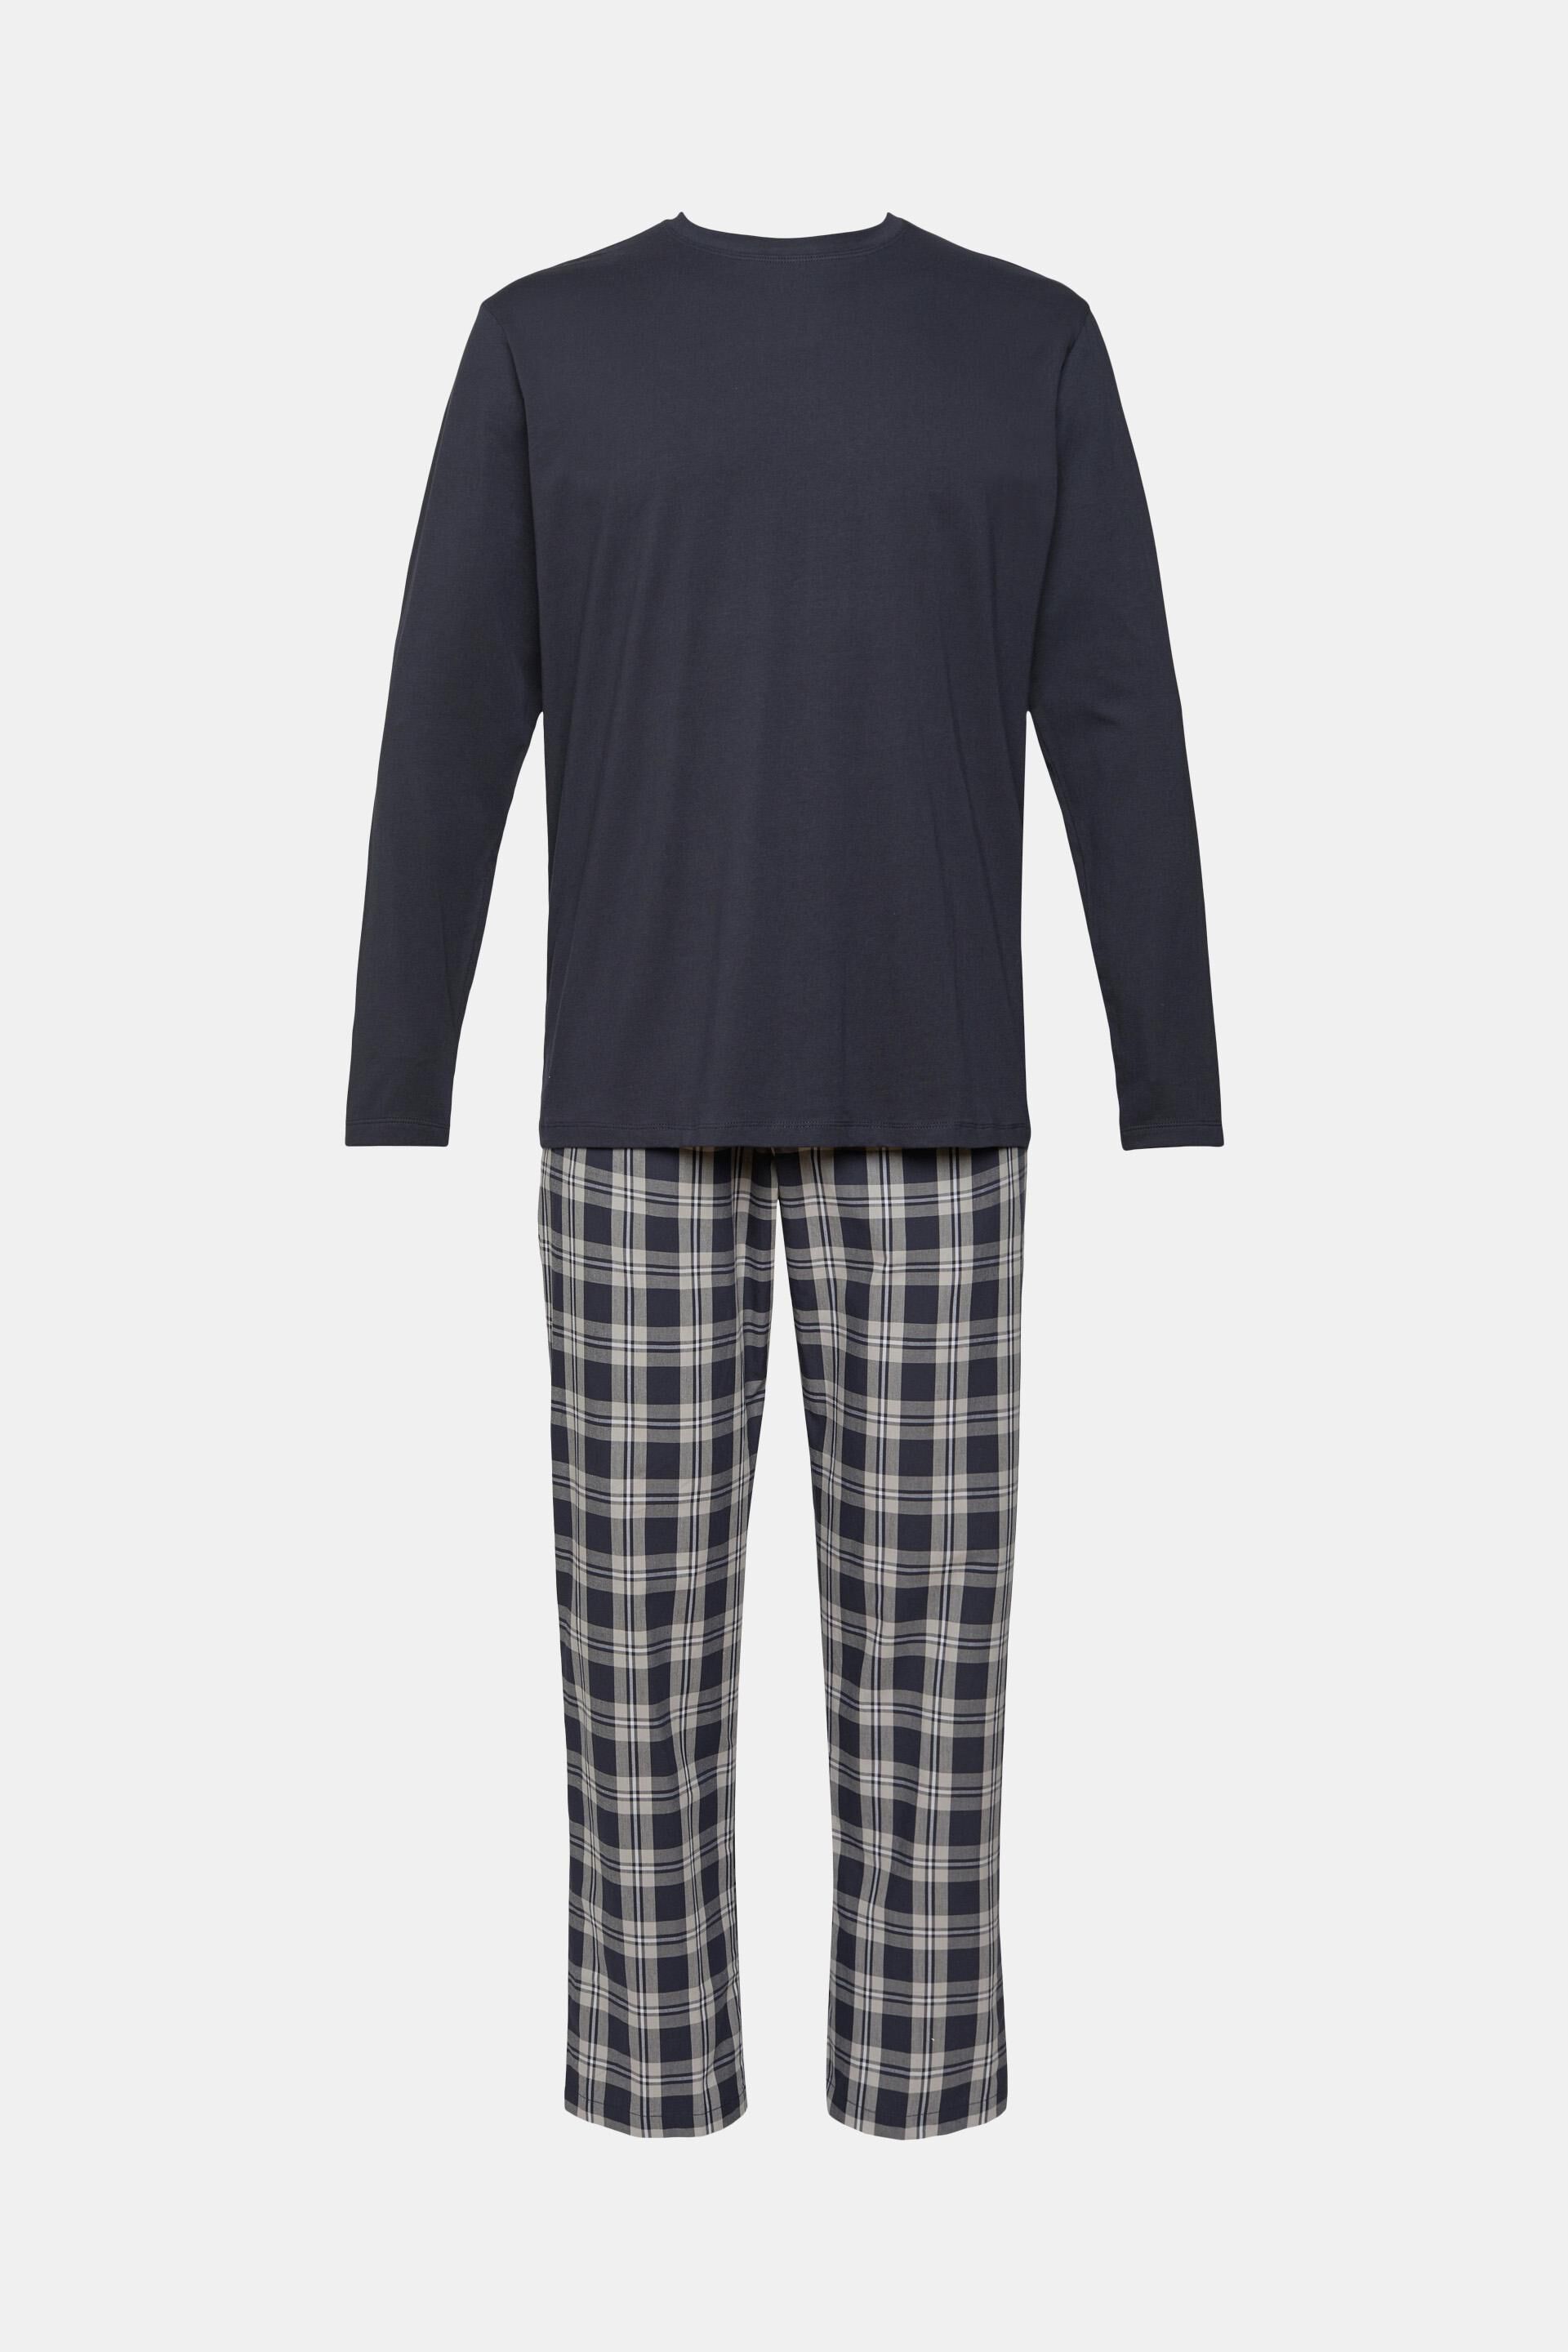 Basic Lounge NW BCI s.Shorts Pantaln de Pijama Esprit de hombre de color Gris Hombre Ropa de Ropa para dormir de Pijamas y ropa de estar por casa 